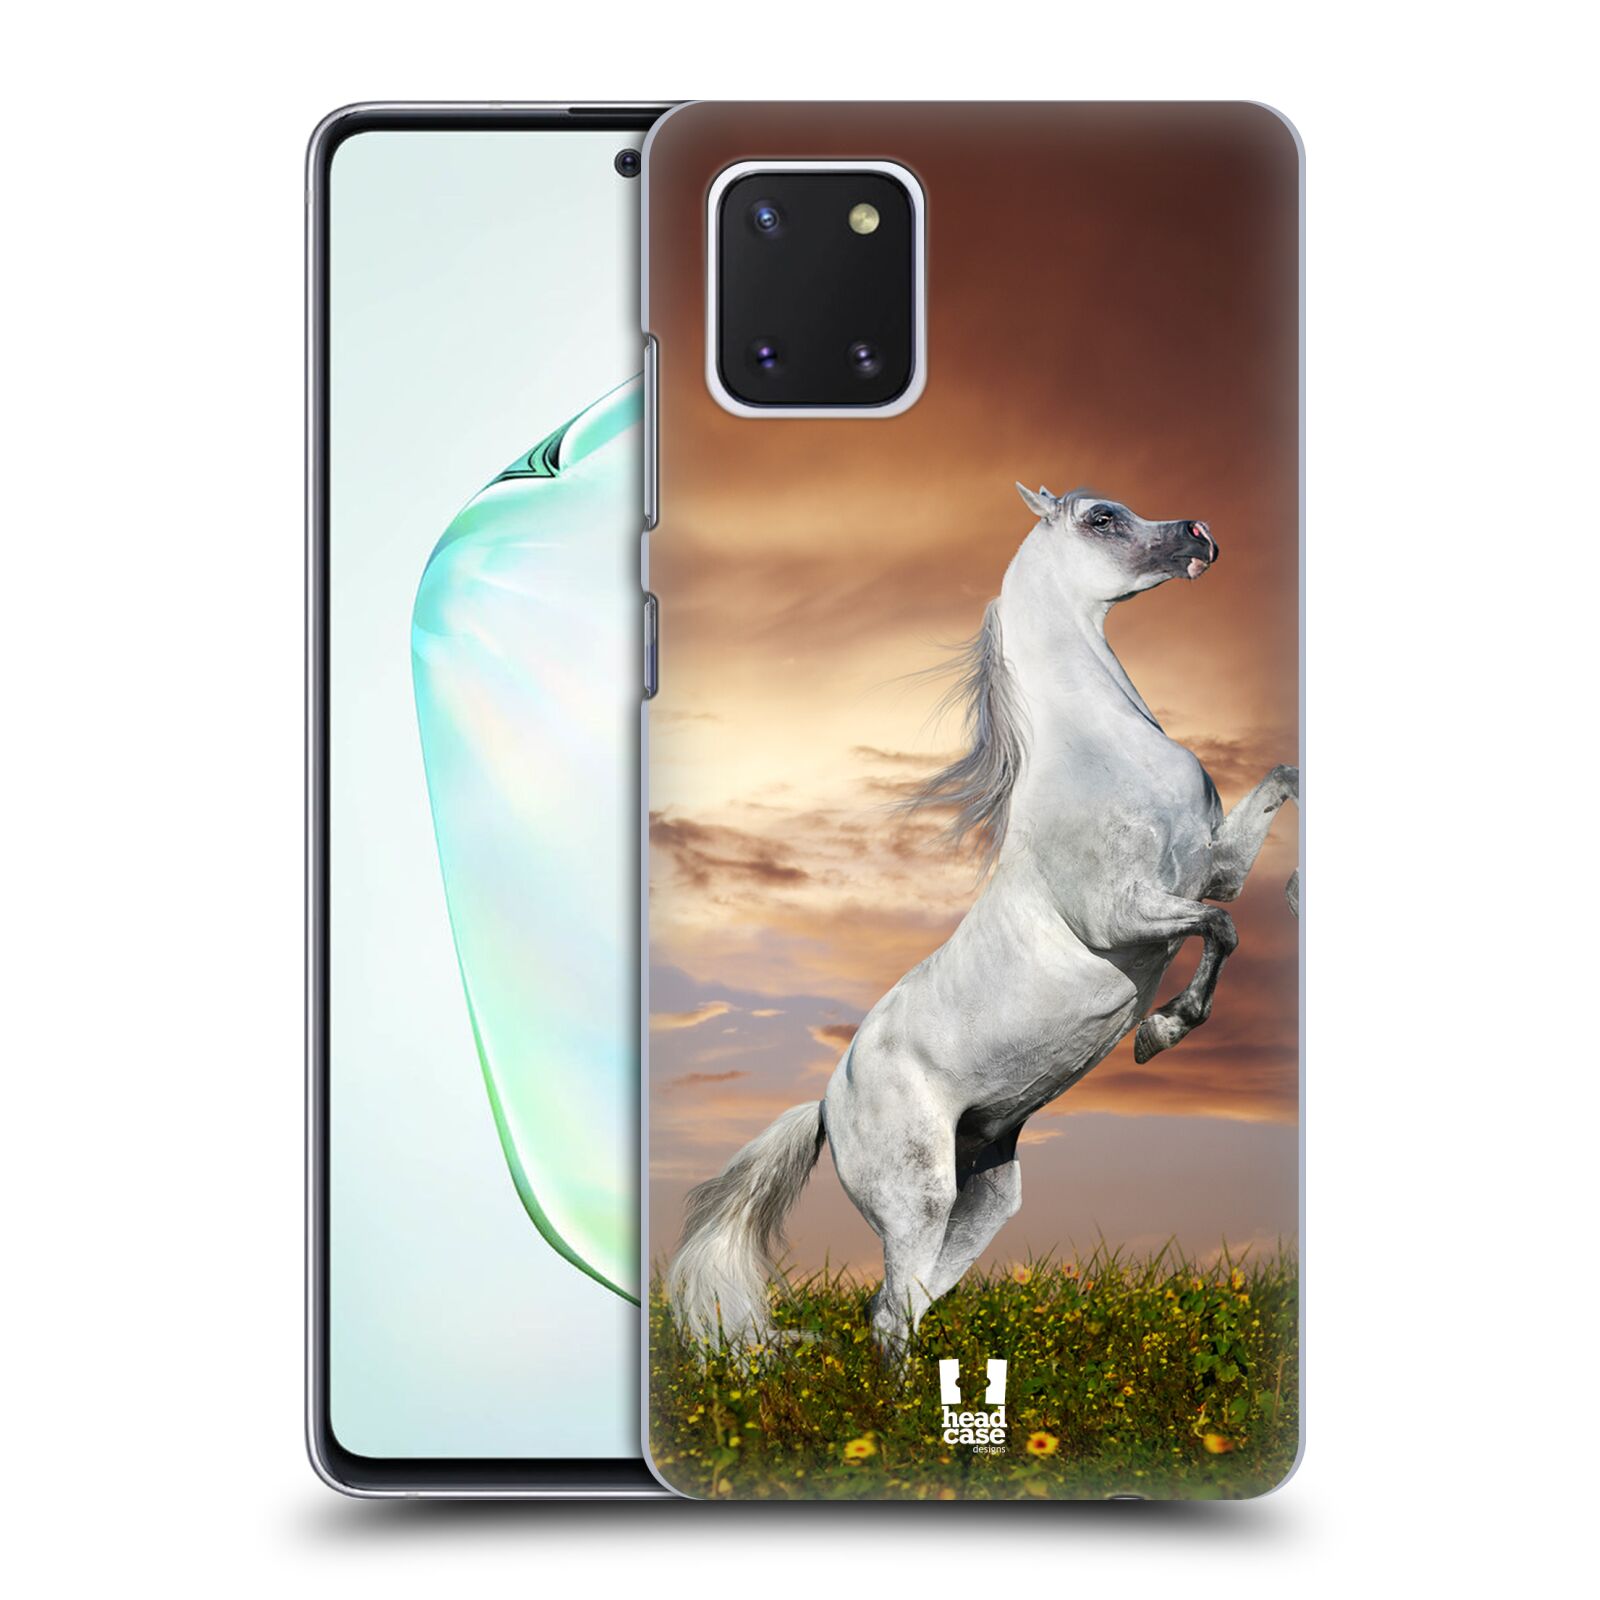 Zadní obal pro mobil Samsung Galaxy Note 10 Lite - HEAD CASE - Svět zvířat divoký kůň